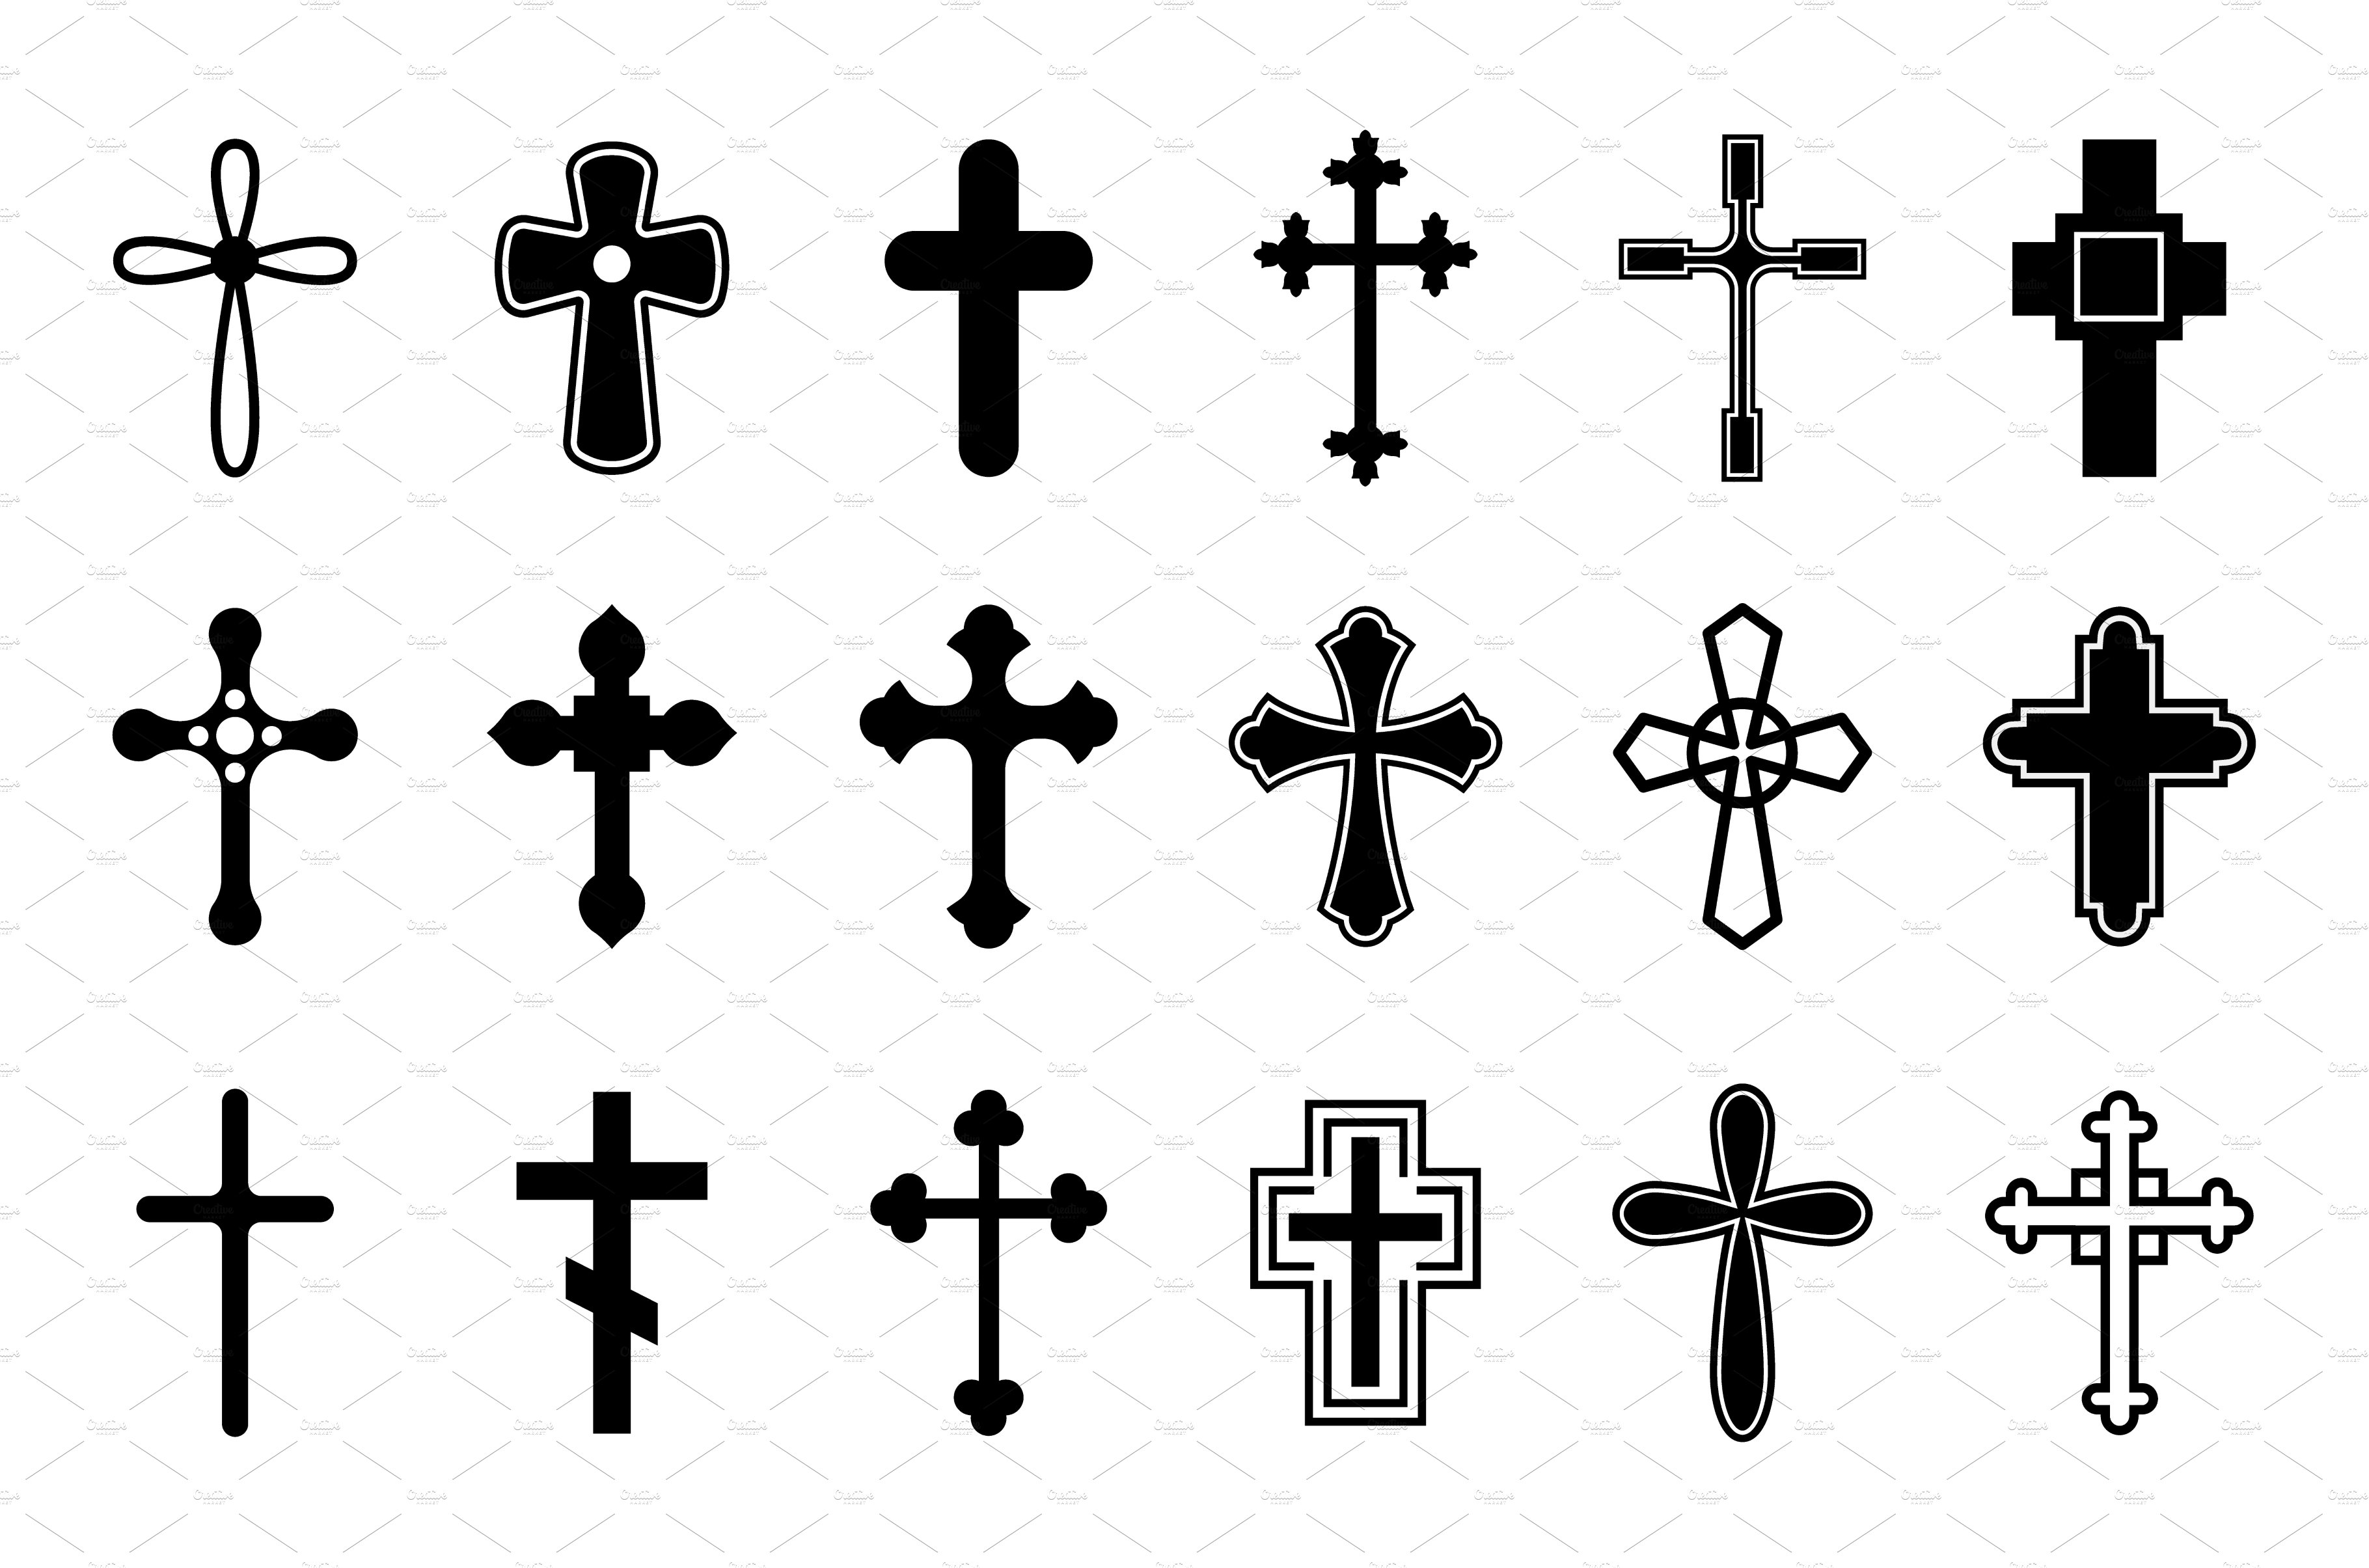 Св элементы. Православный крест (крест Святого Лазаря). Крест Готика. Иконки крестов. Церковный орнамент Православия крест вектор.